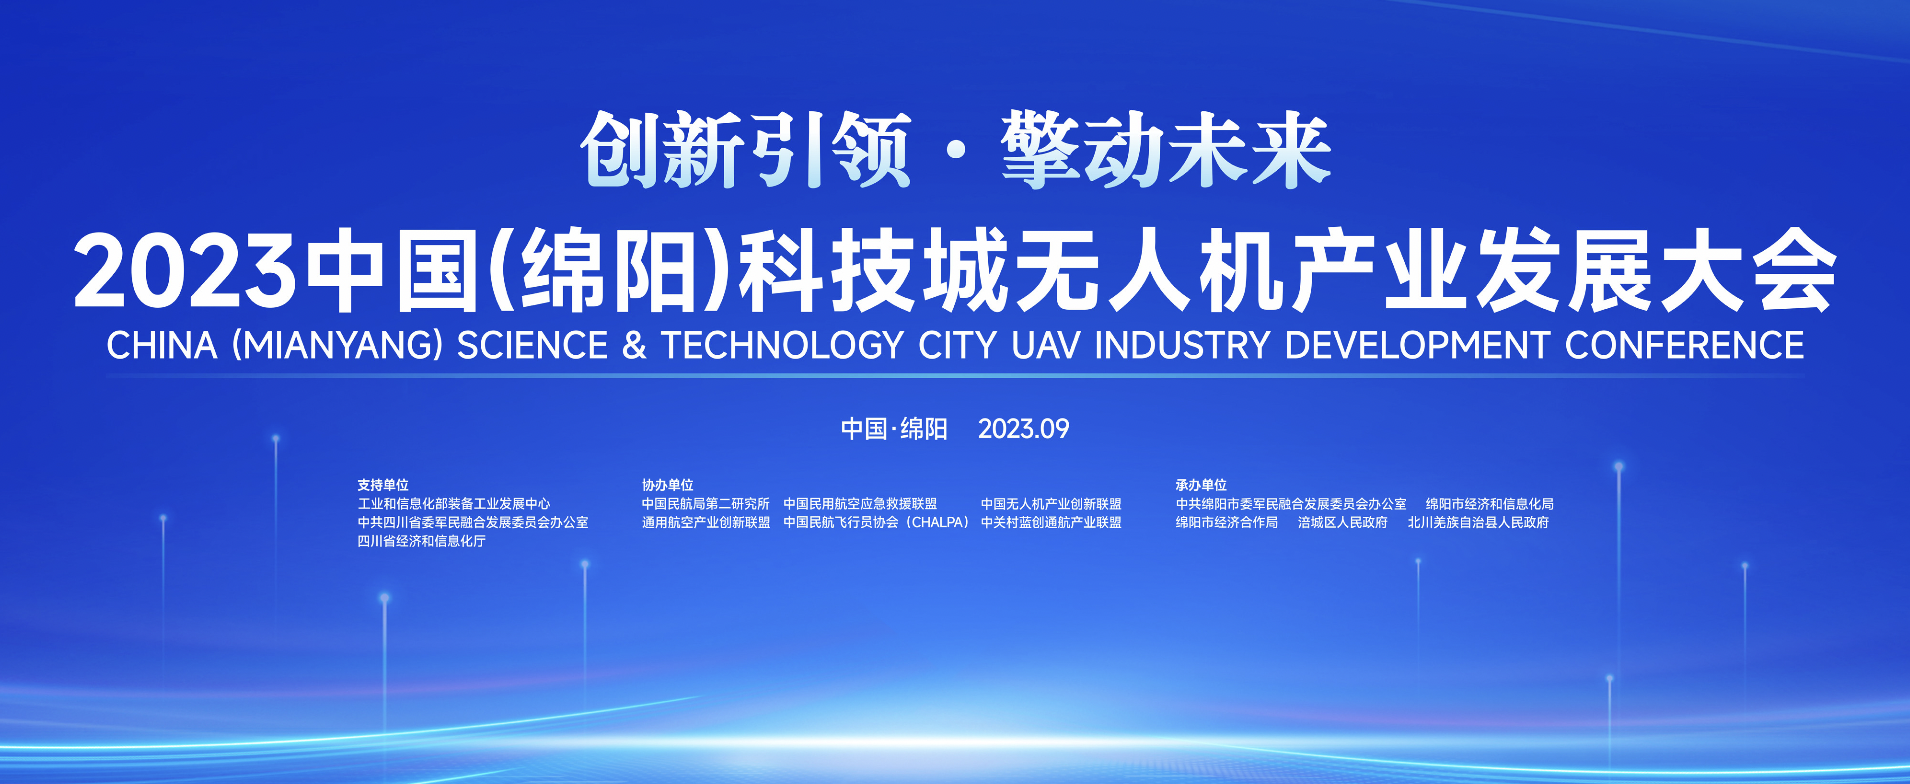 2023中国（绵阳）科技城无人机产业发展大会即将举办